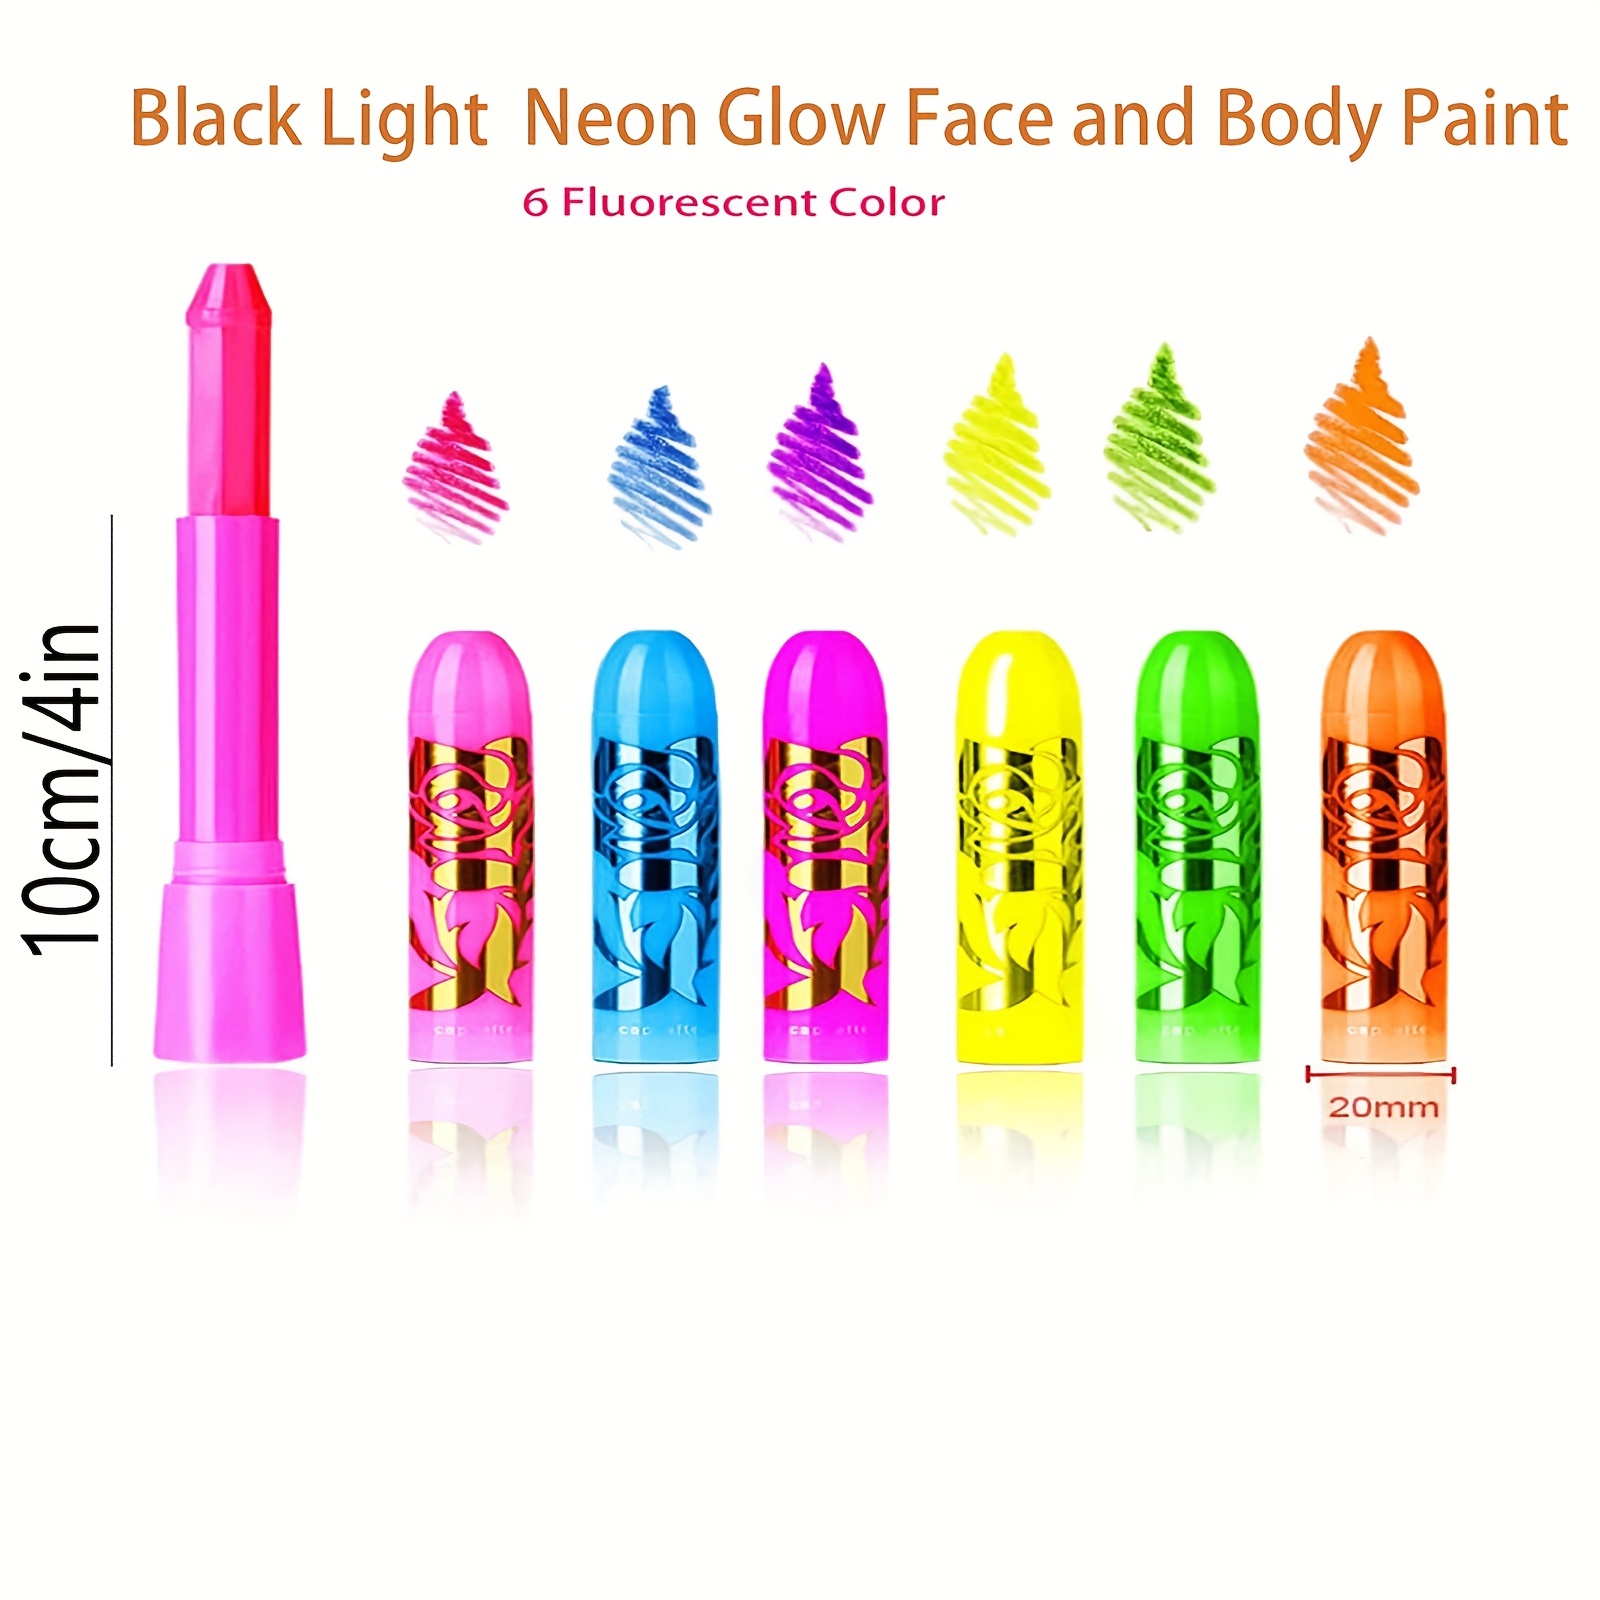 Glow Sticks Makeup